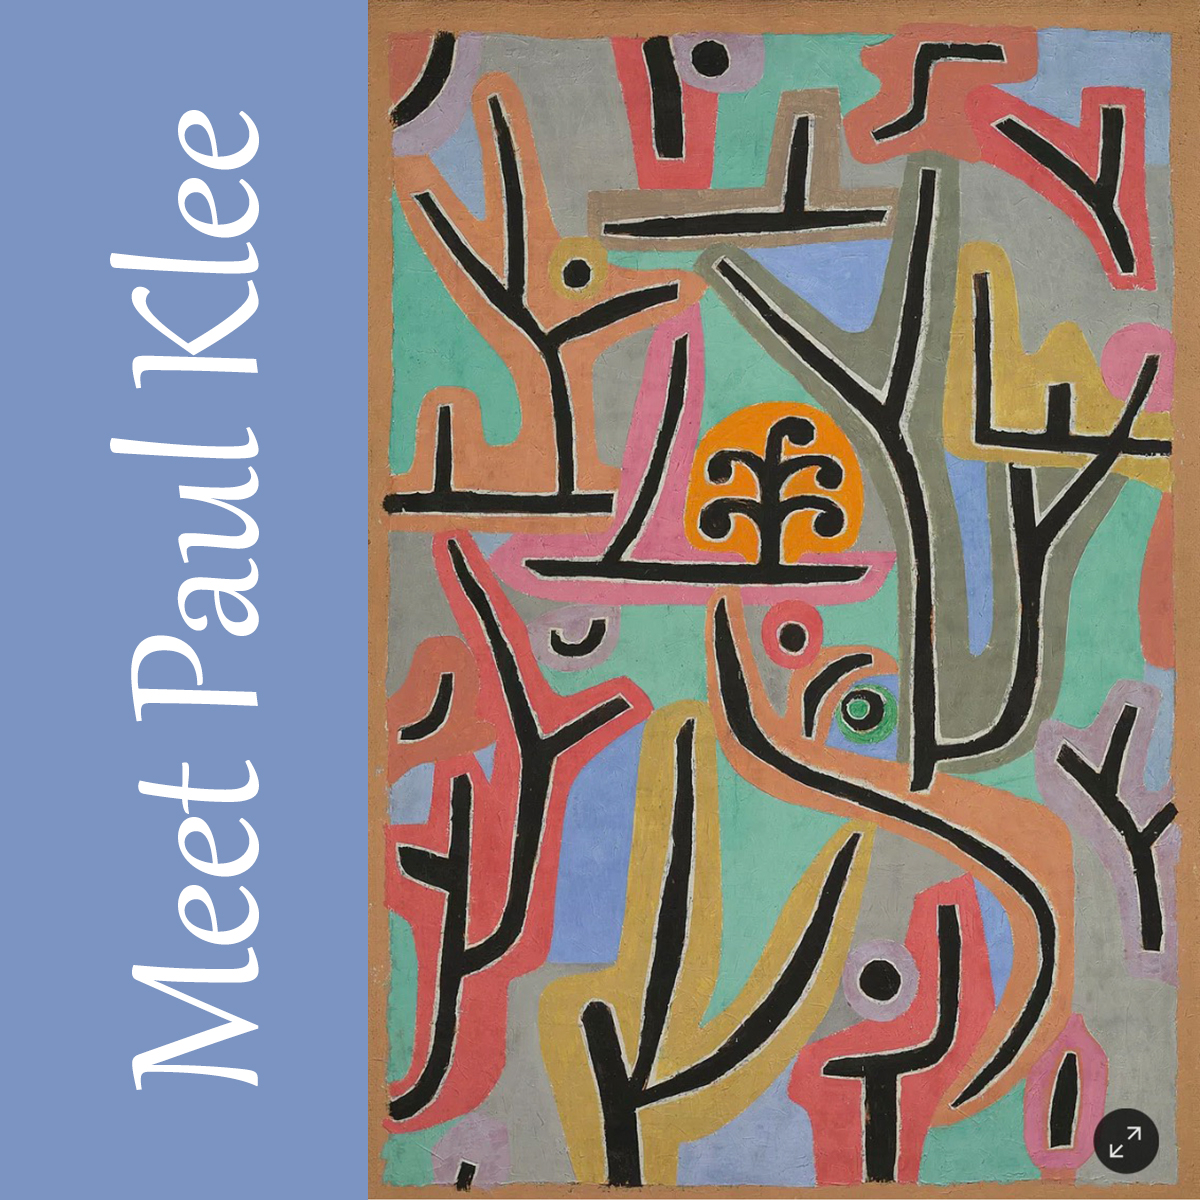 Meet Paul Klee